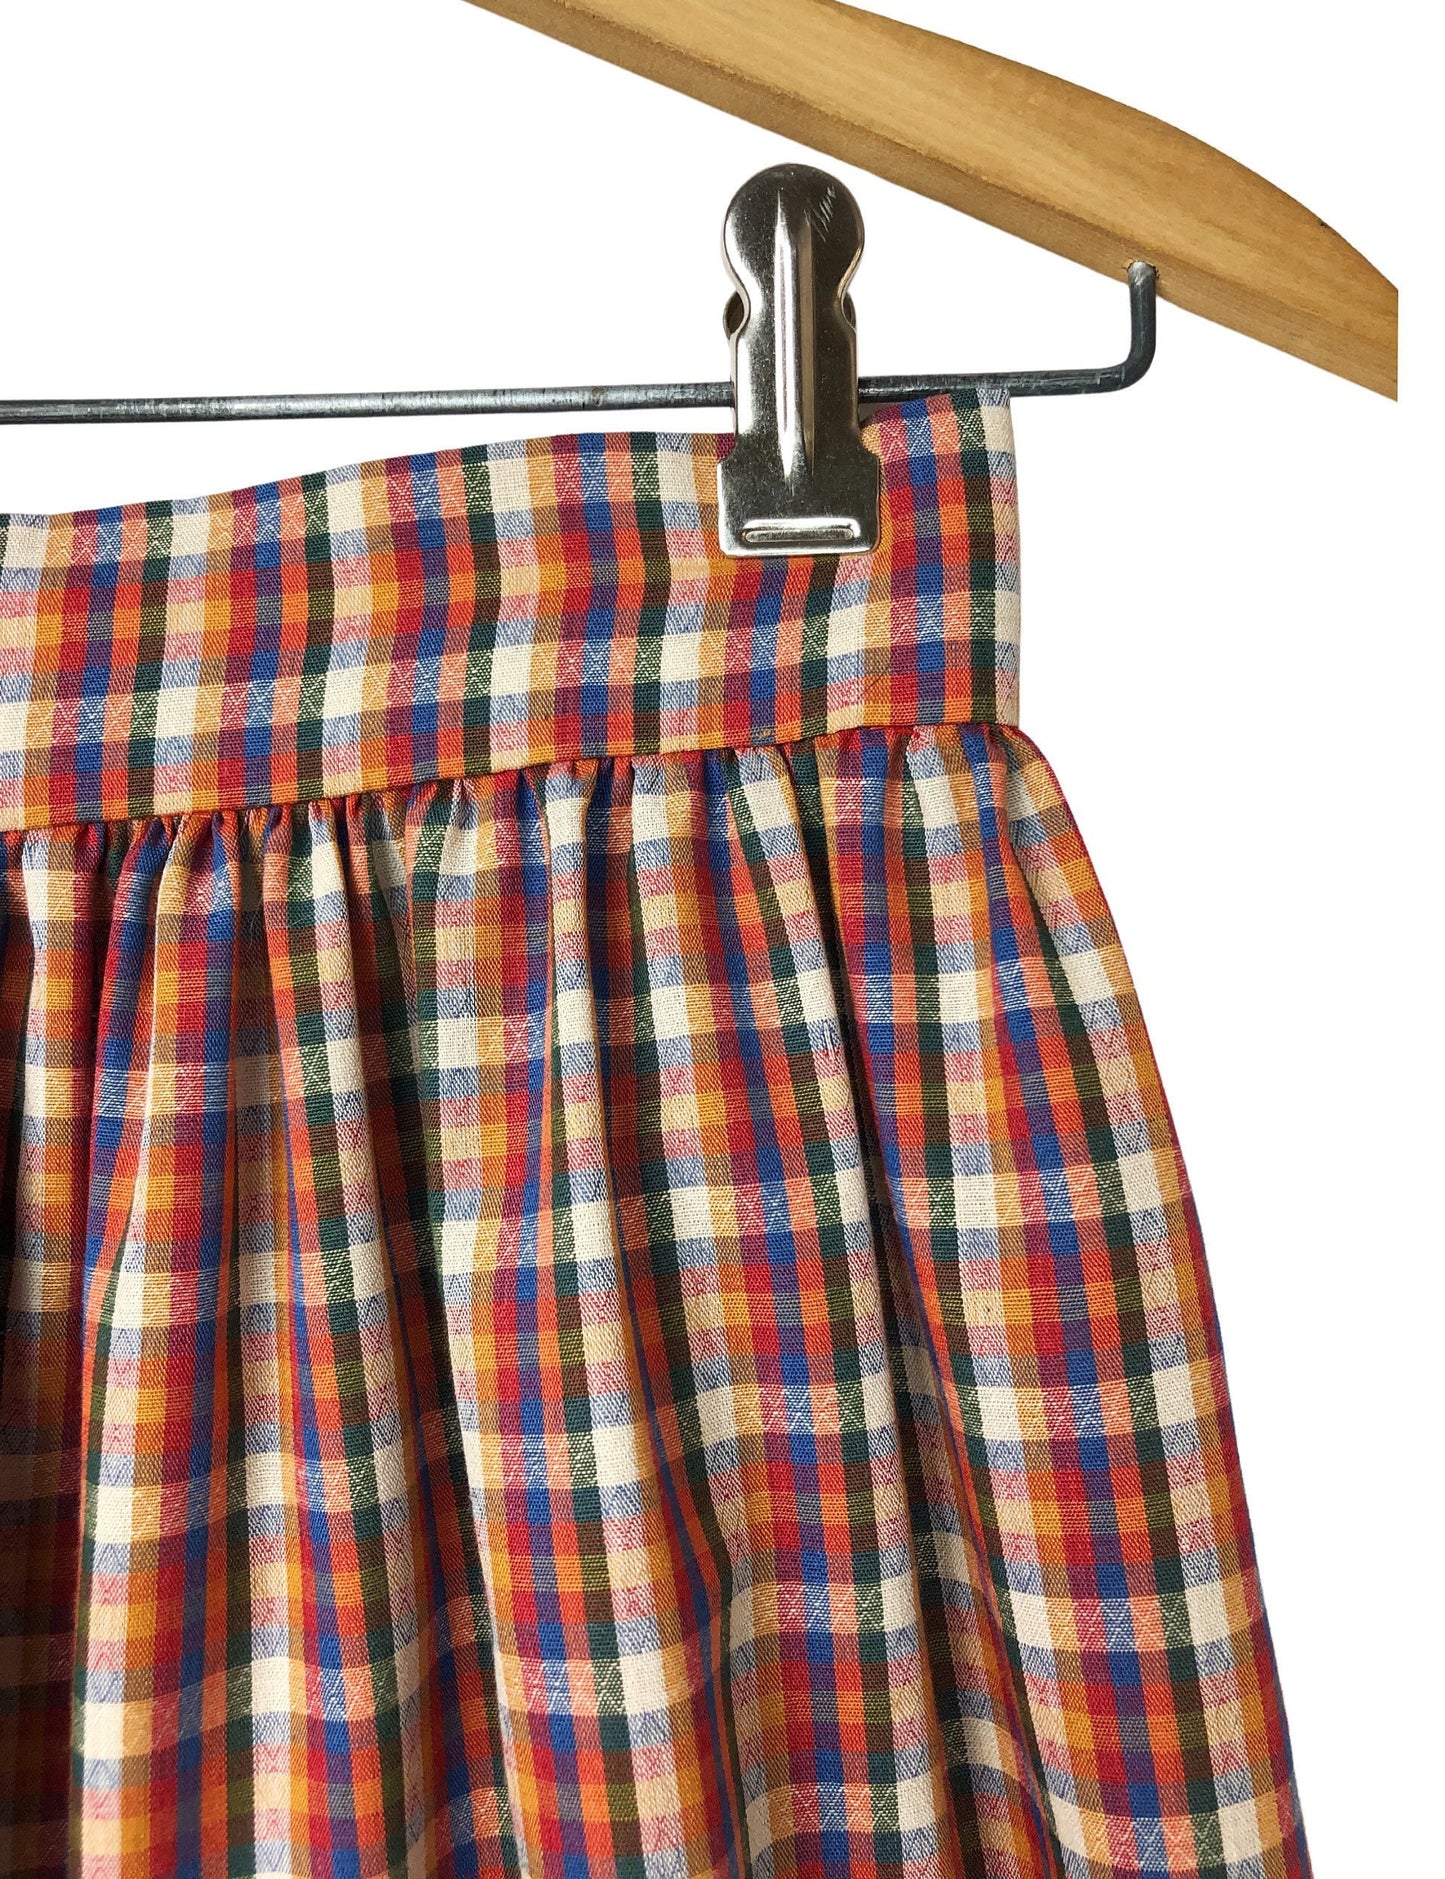 Vintage 70’s Fall Rainbow Plaid High Waisted Mid-Calf Prairie Skirt Size 2